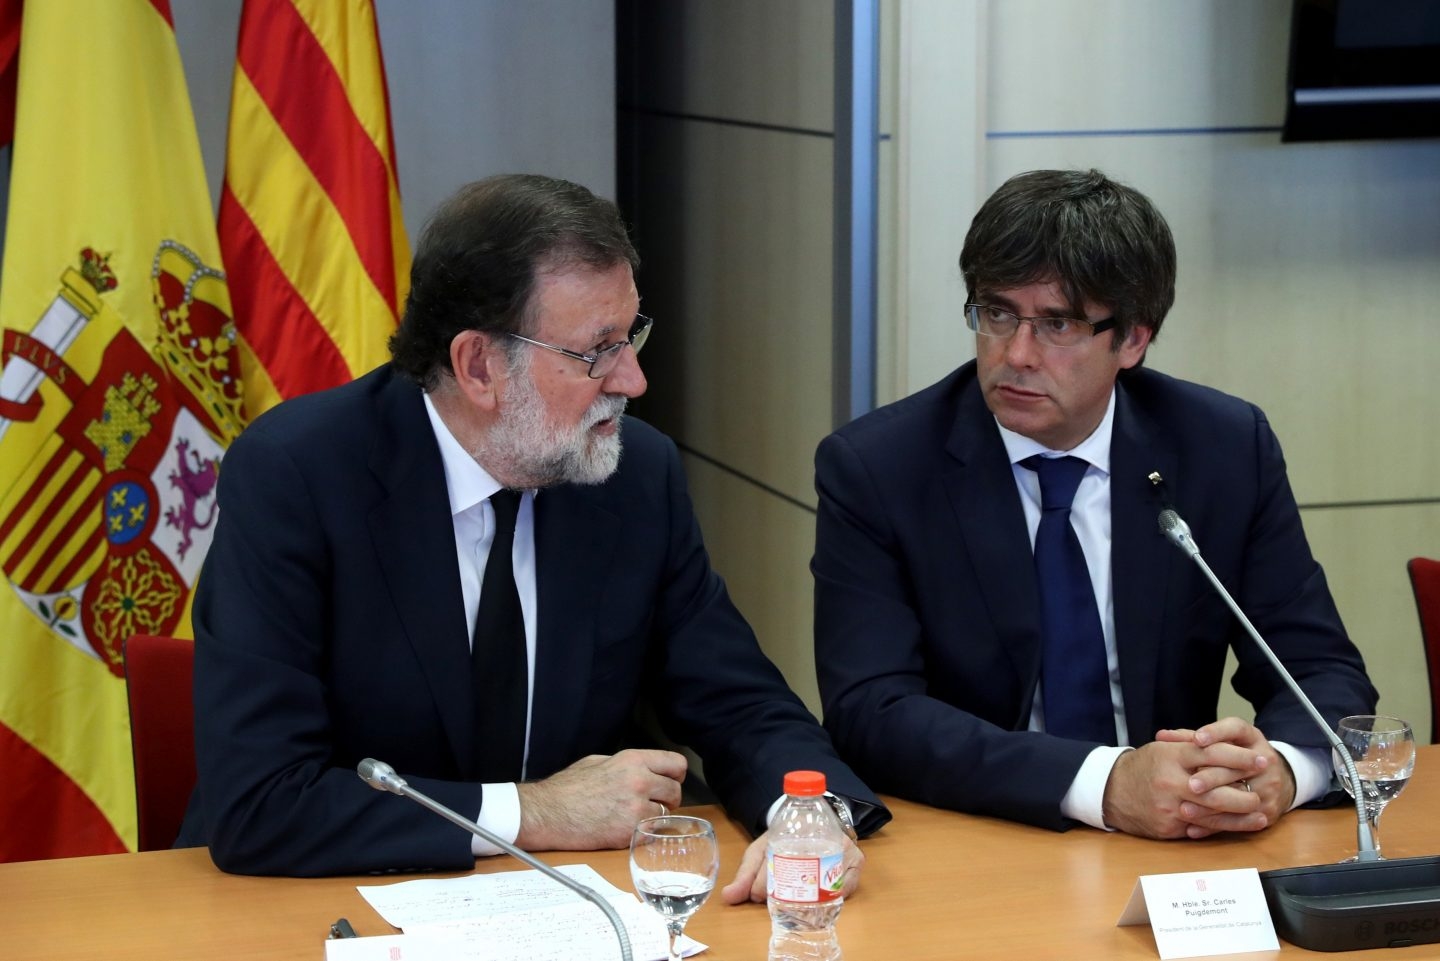 El presidente del Gobierno, Mariano Rajoy, y el de la Generalitat de Cataluña, Carles Puigdemont, tras los atentados de Barcelona.